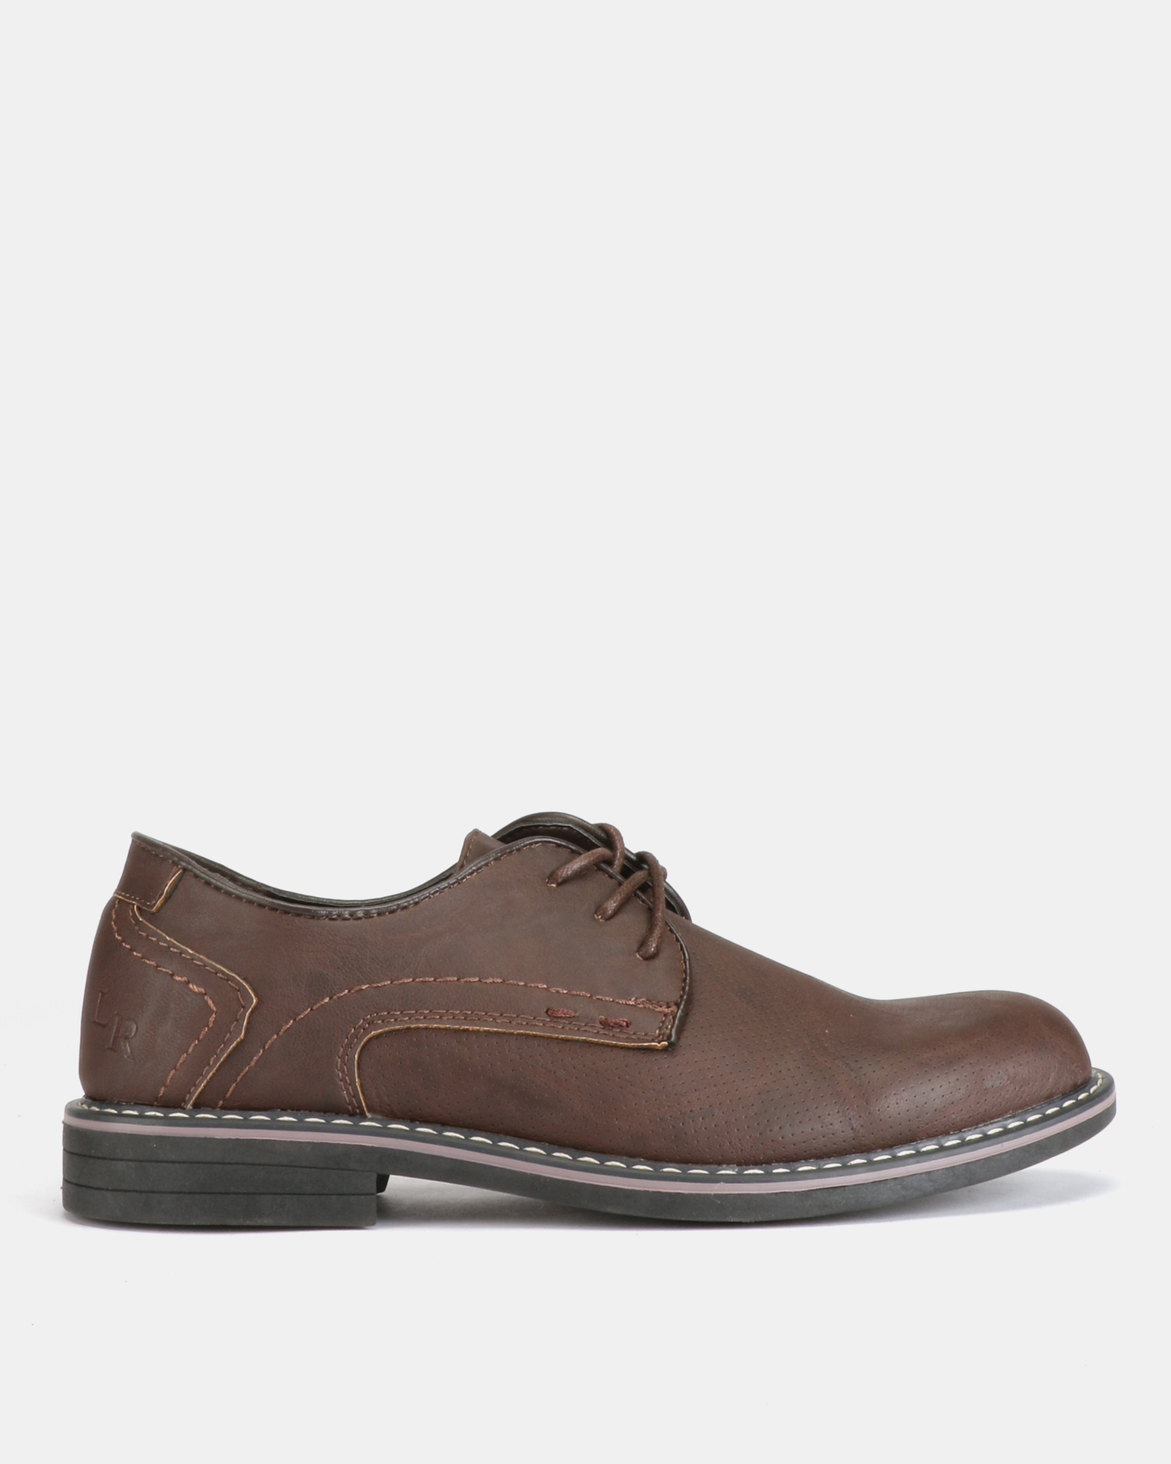 Luciano Rossi Shoes Brown | Zando